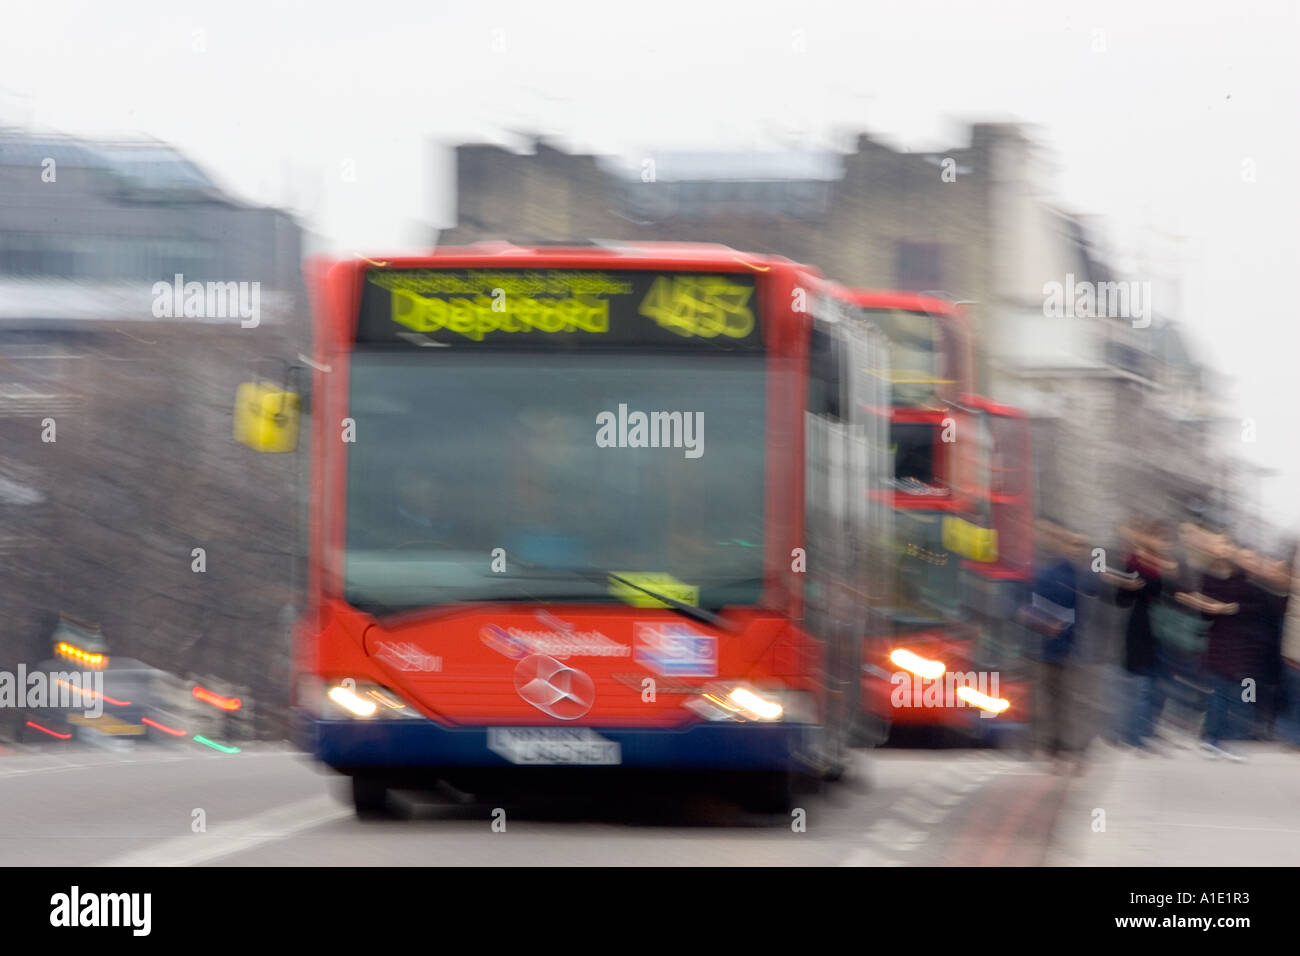 Les bus de Londres Angleterre Royaume-Uni Banque D'Images